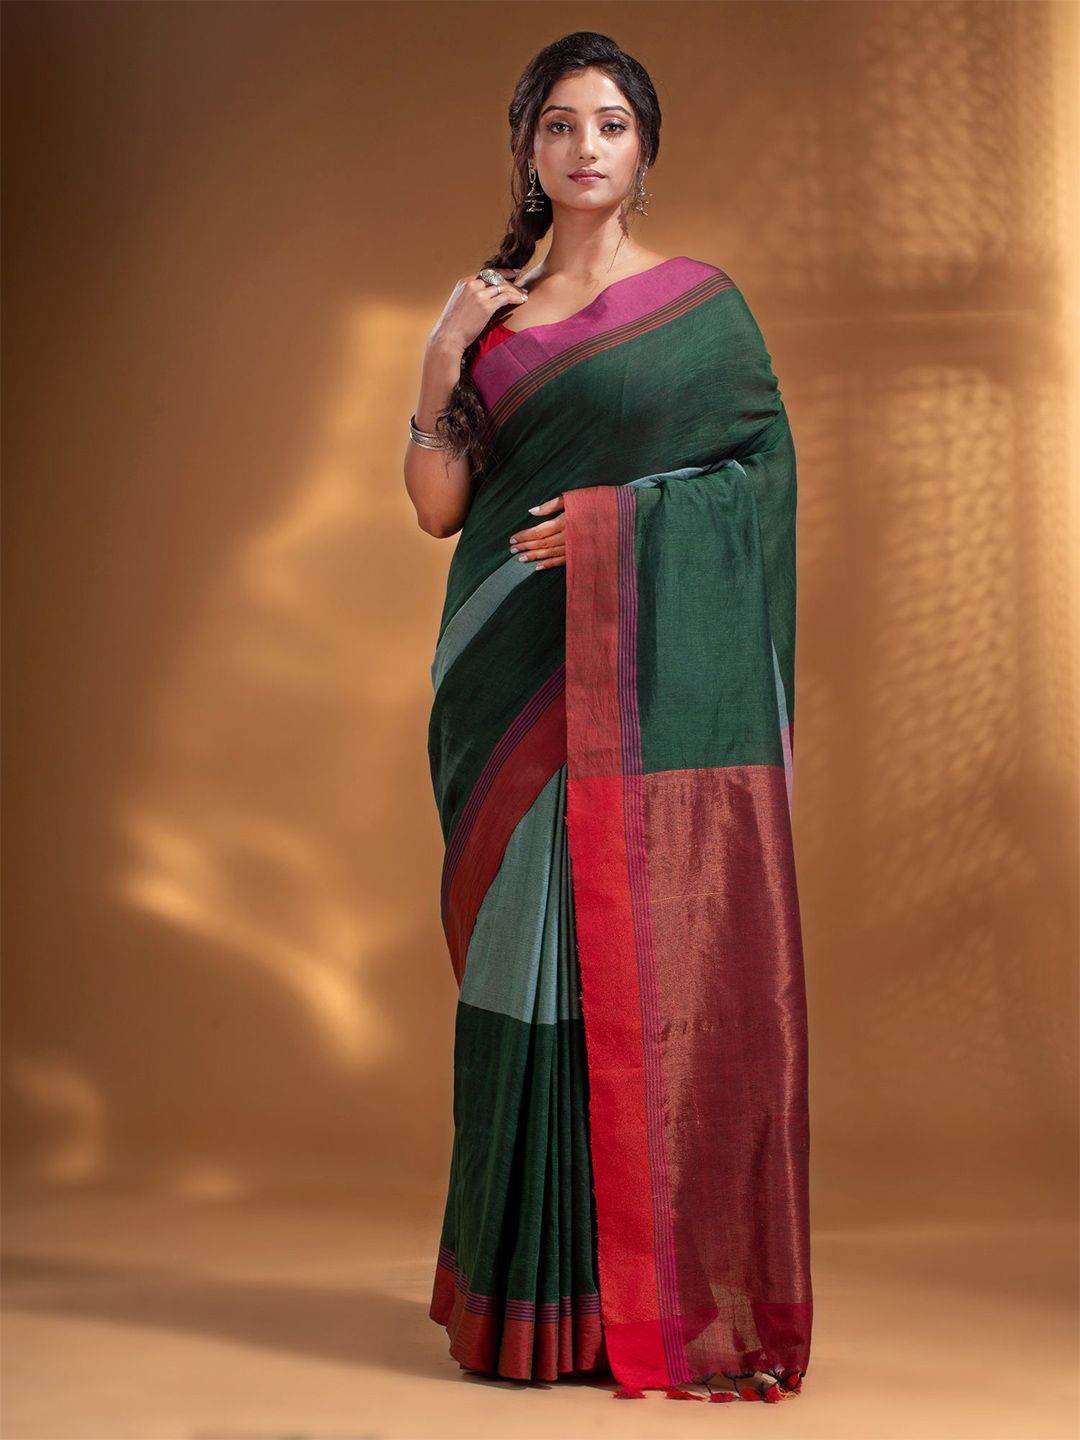 Arhi Green & Orange Woven Design Pure Cotton Saree Price in India